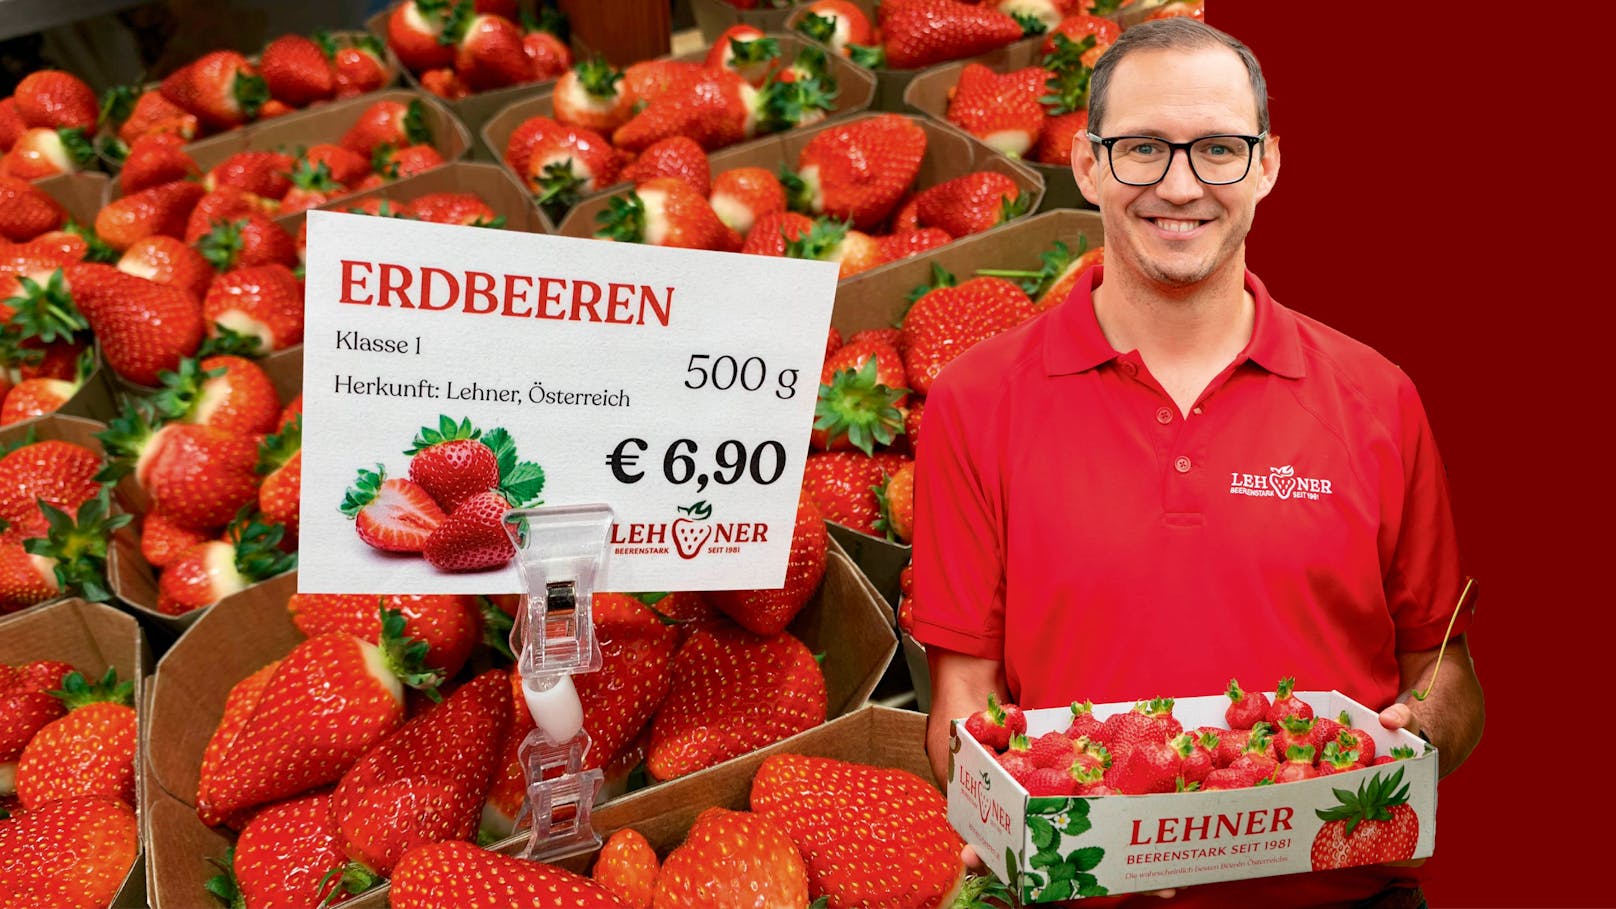 6,90 € für halbes Kilo – Erdbeeren schon wieder teurer